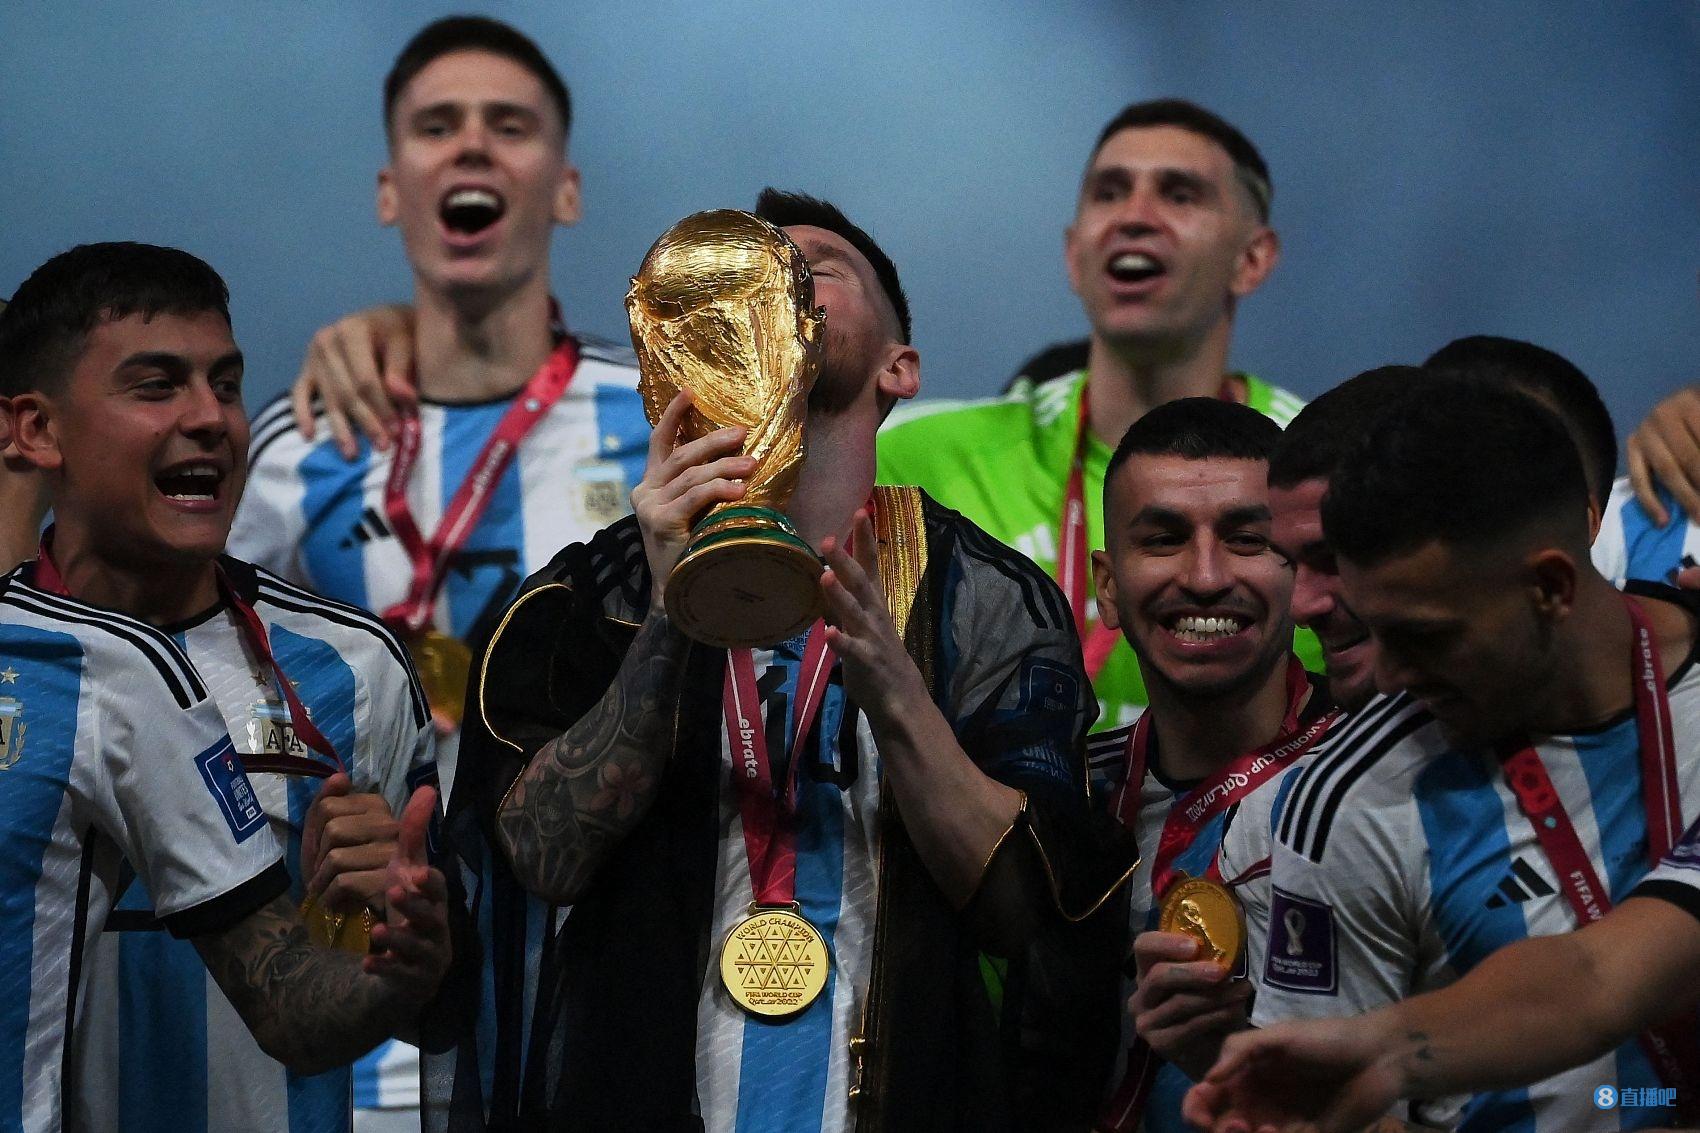 国足vs阿根廷？你认为比分会是多少？阿根廷险胜or国足爆冷拿下？